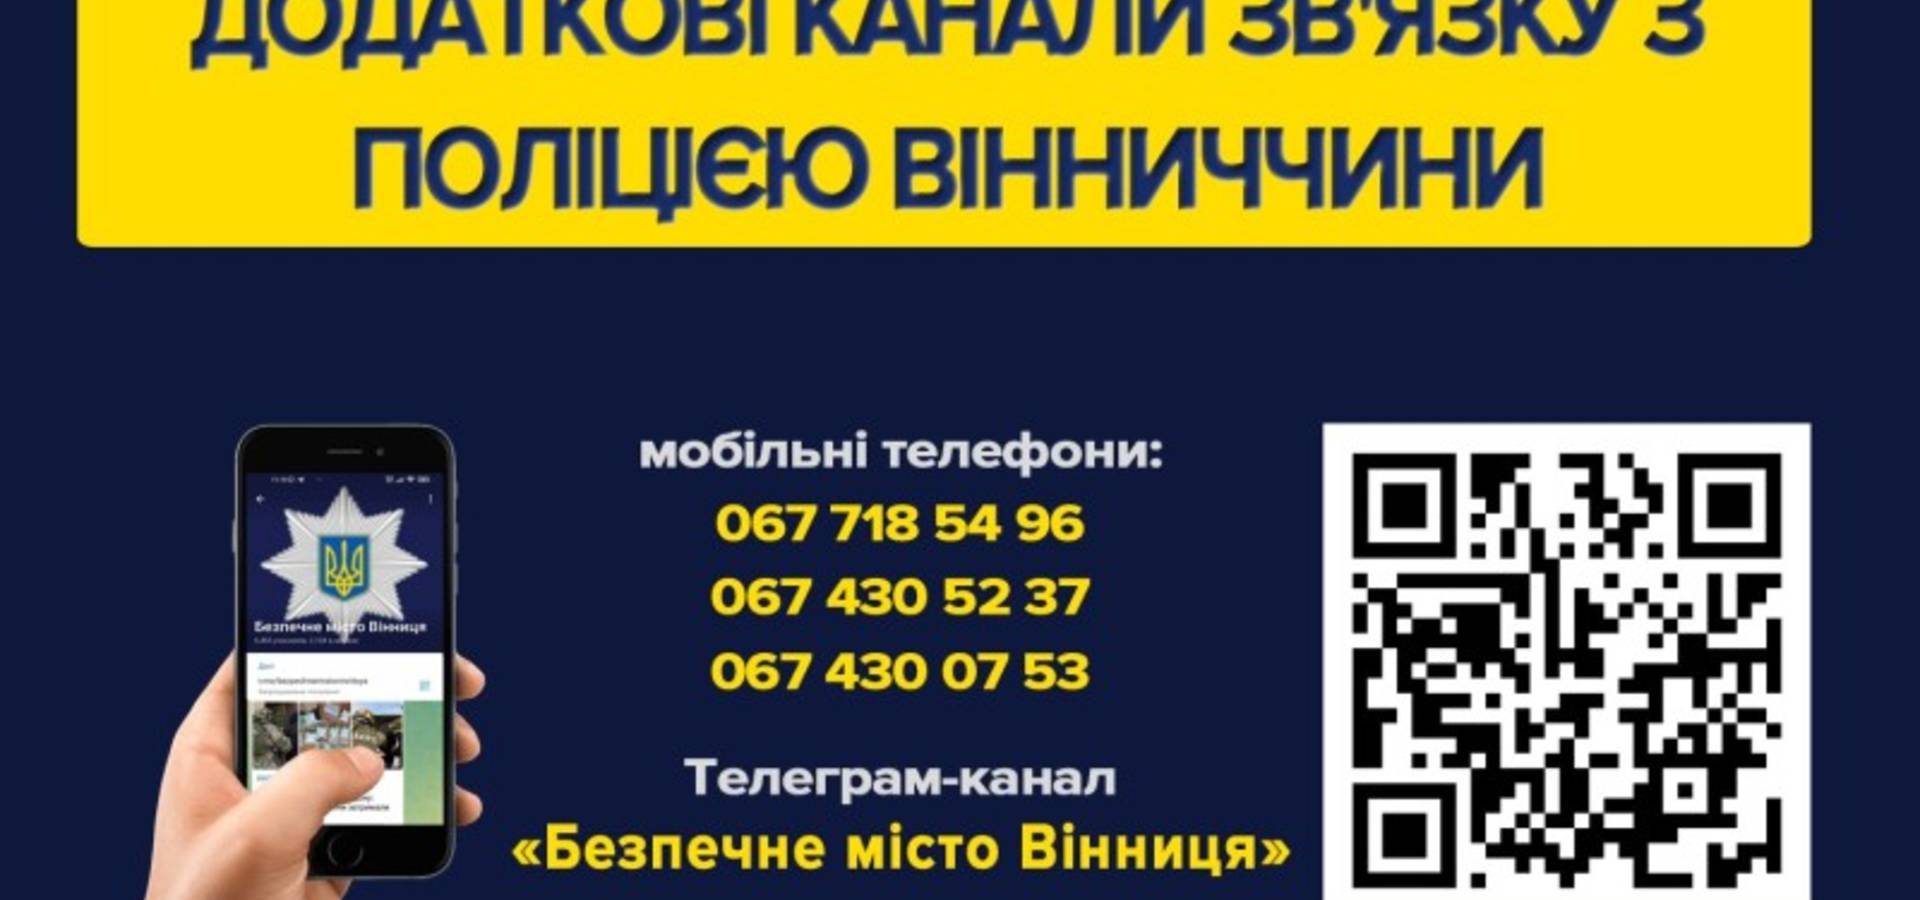 У поліції Вінниччини запрацювали додаткові телефони для реєстрації звернень